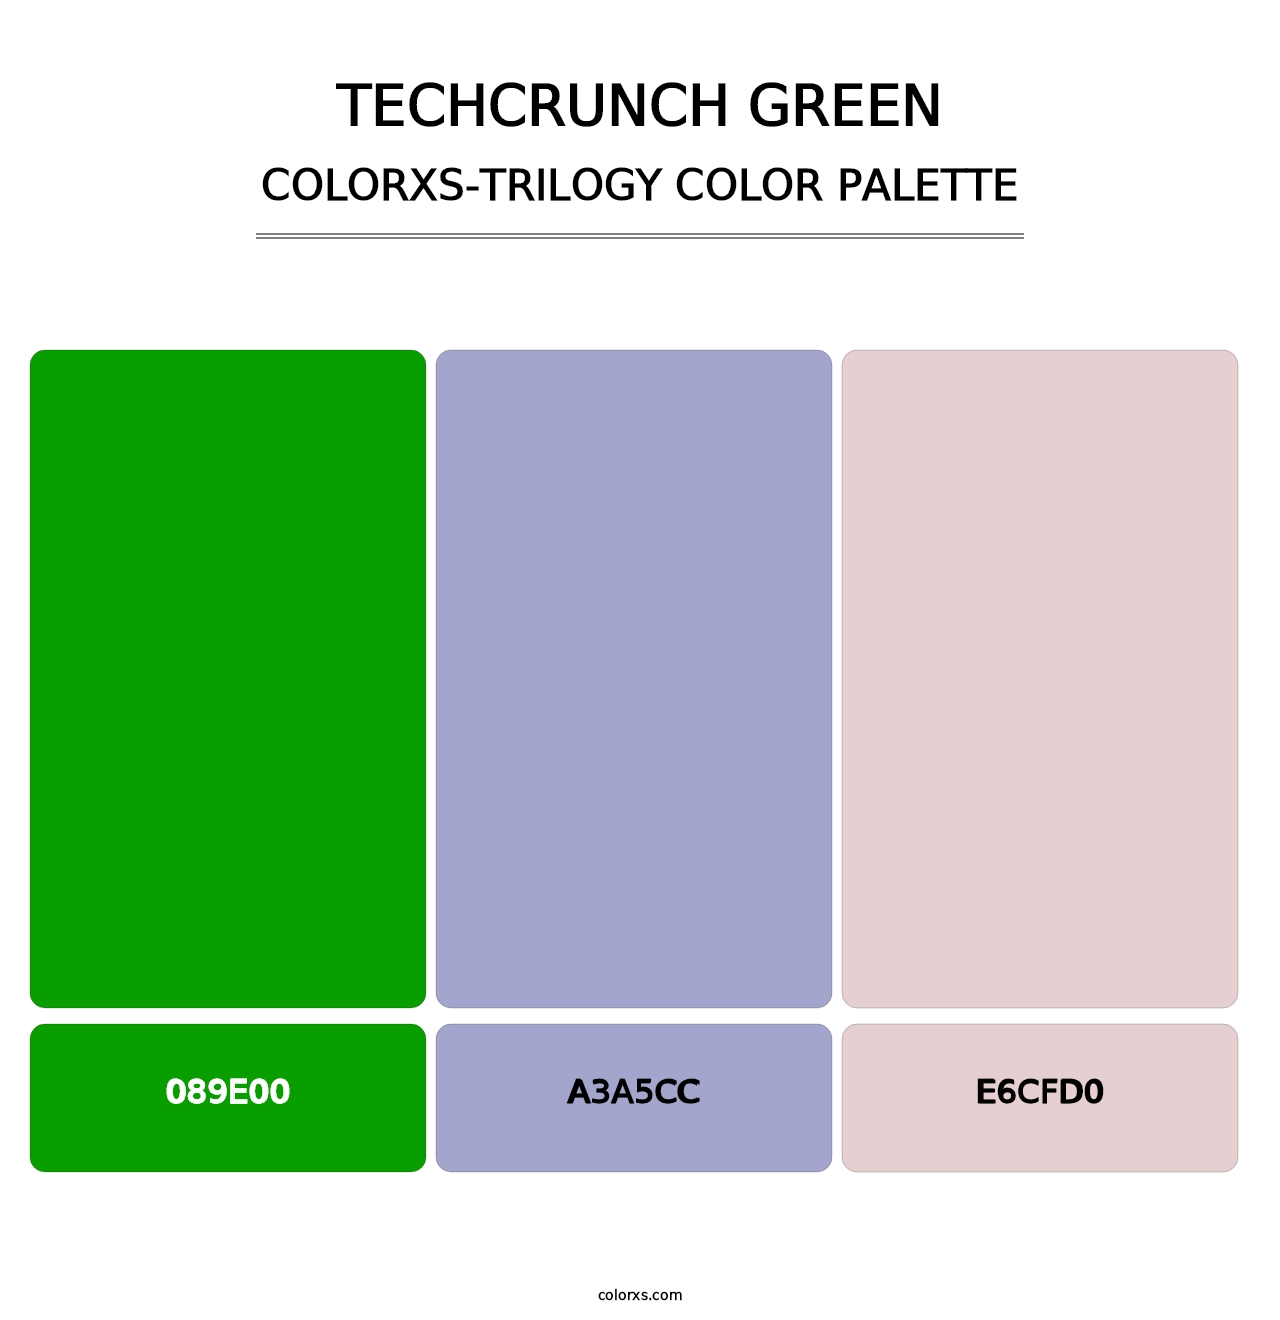 TechCrunch Green - Colorxs Trilogy Palette